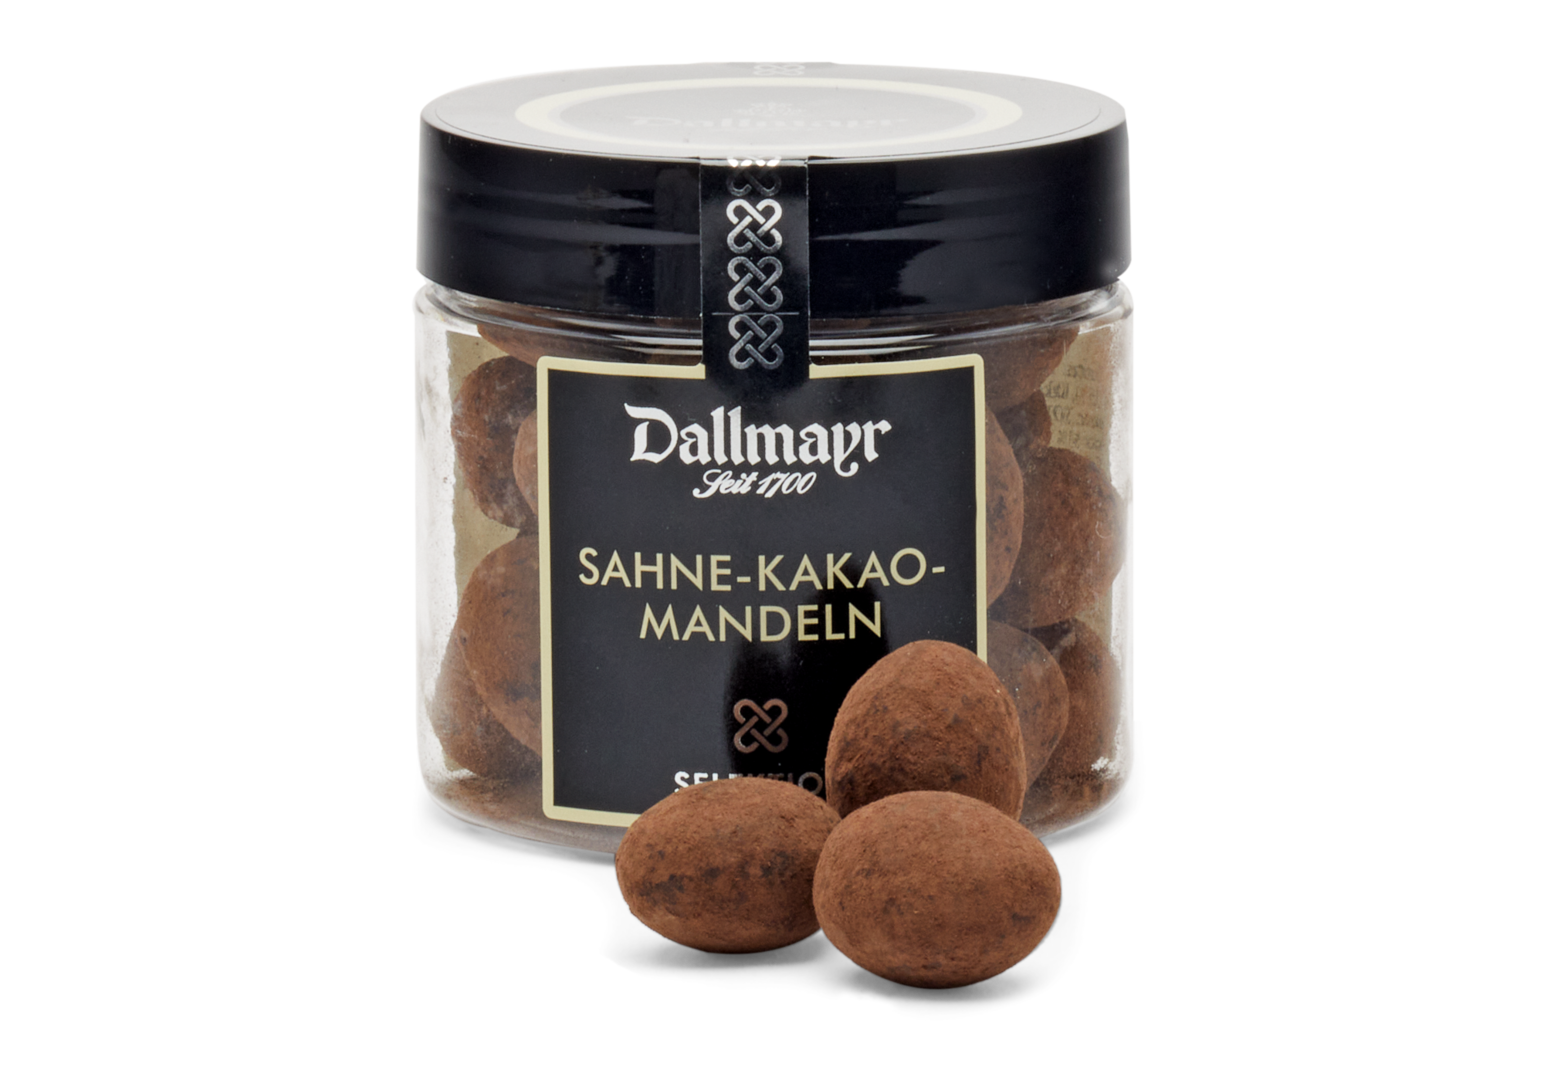 Sahne-Kakao-Mandeln Dallmayr von Alois Dallmayr KG